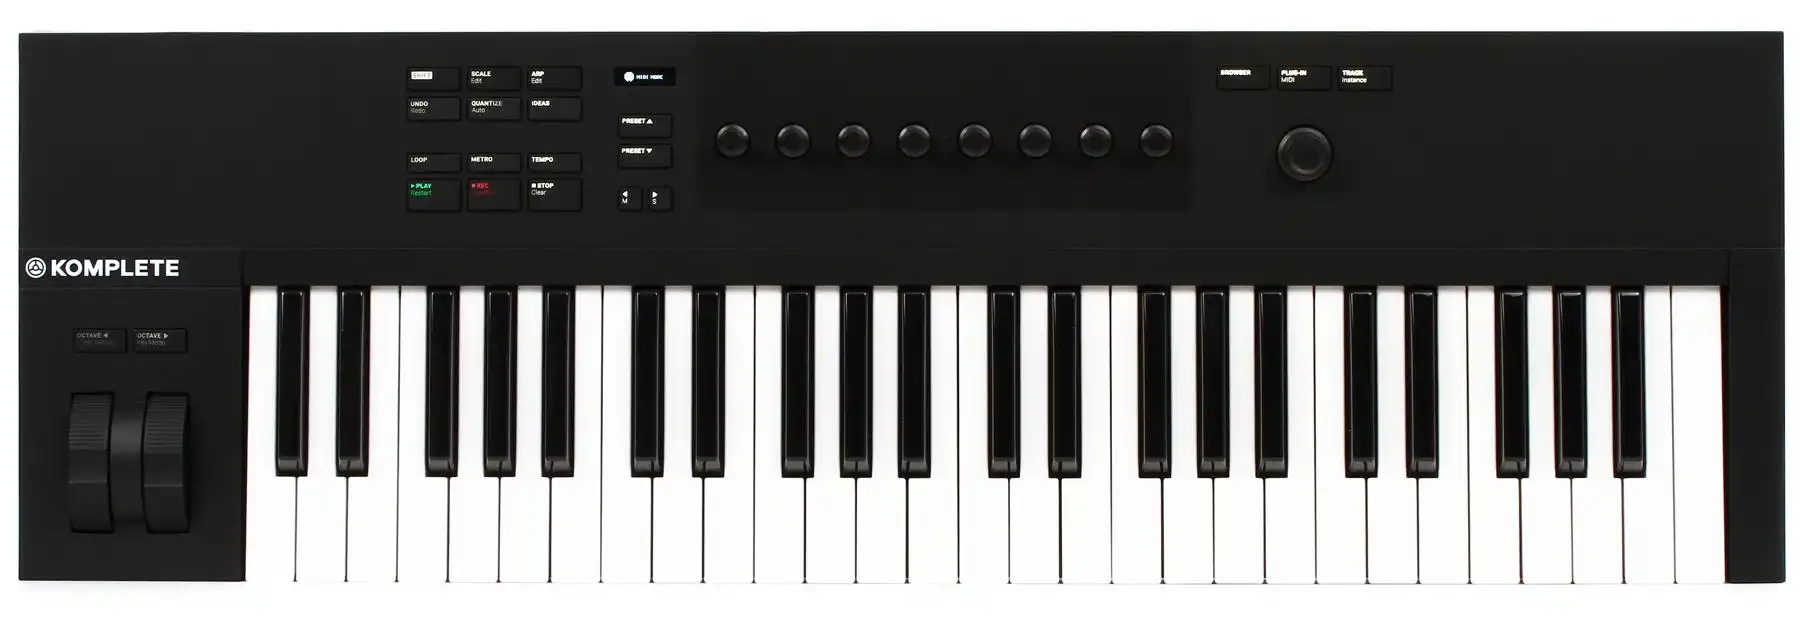 Komplete Kontrol A-Series Keyboards